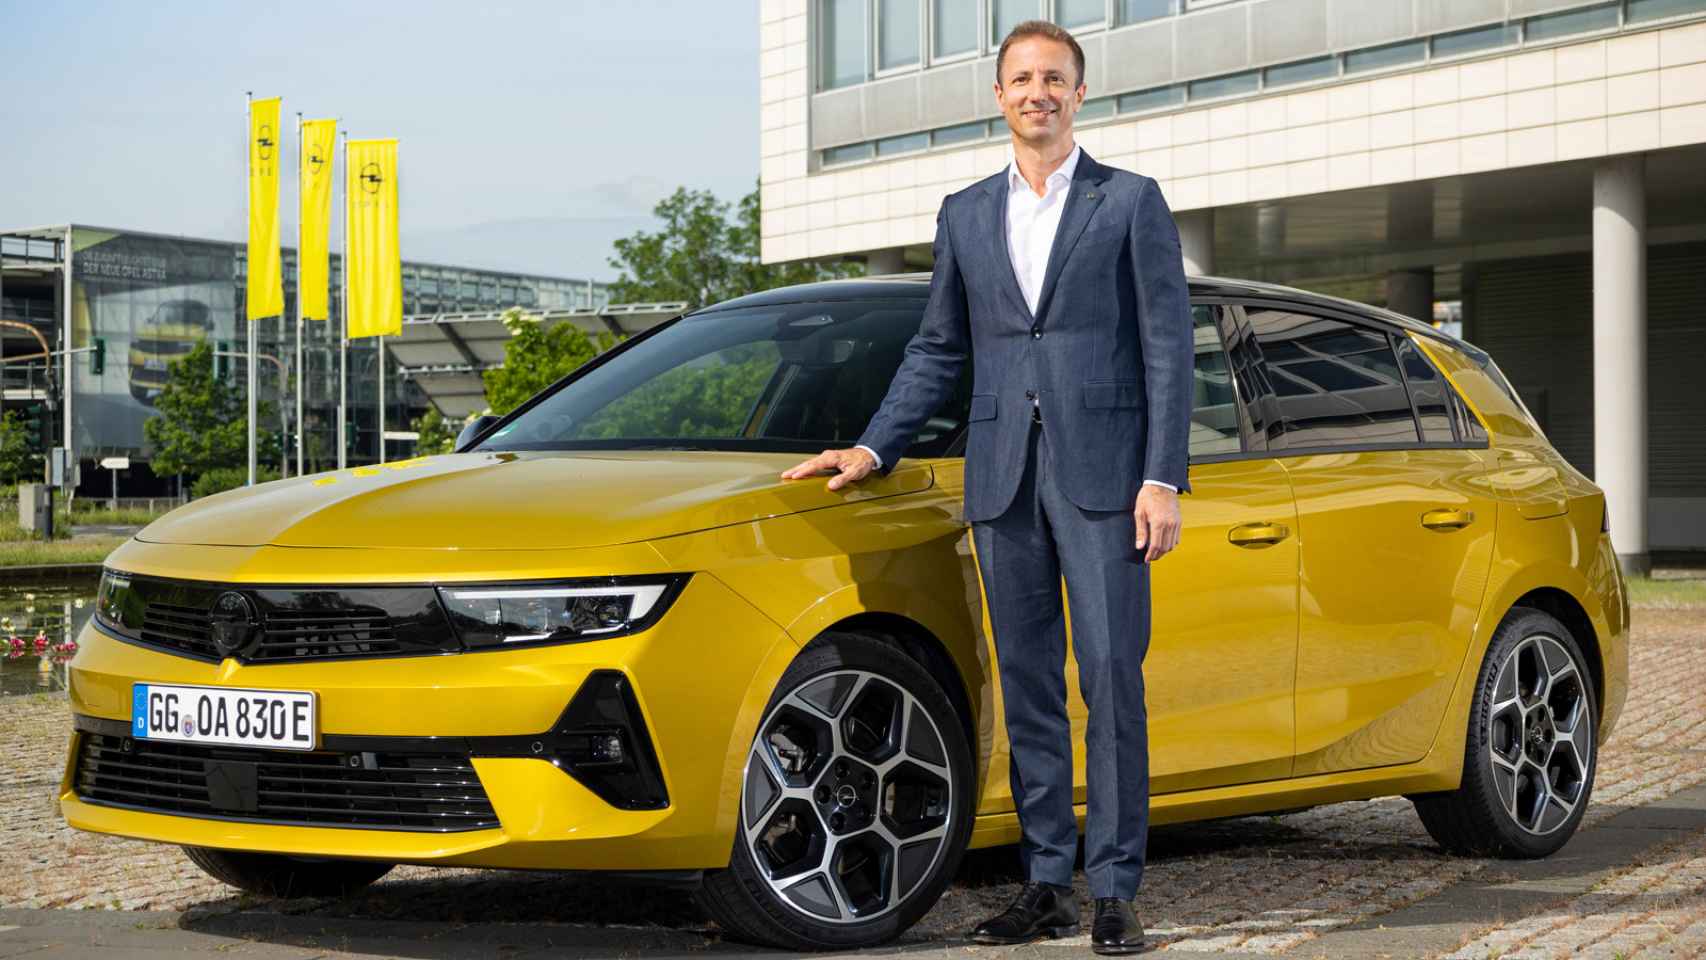 Florian Huettl, nuevo CEO de Opel